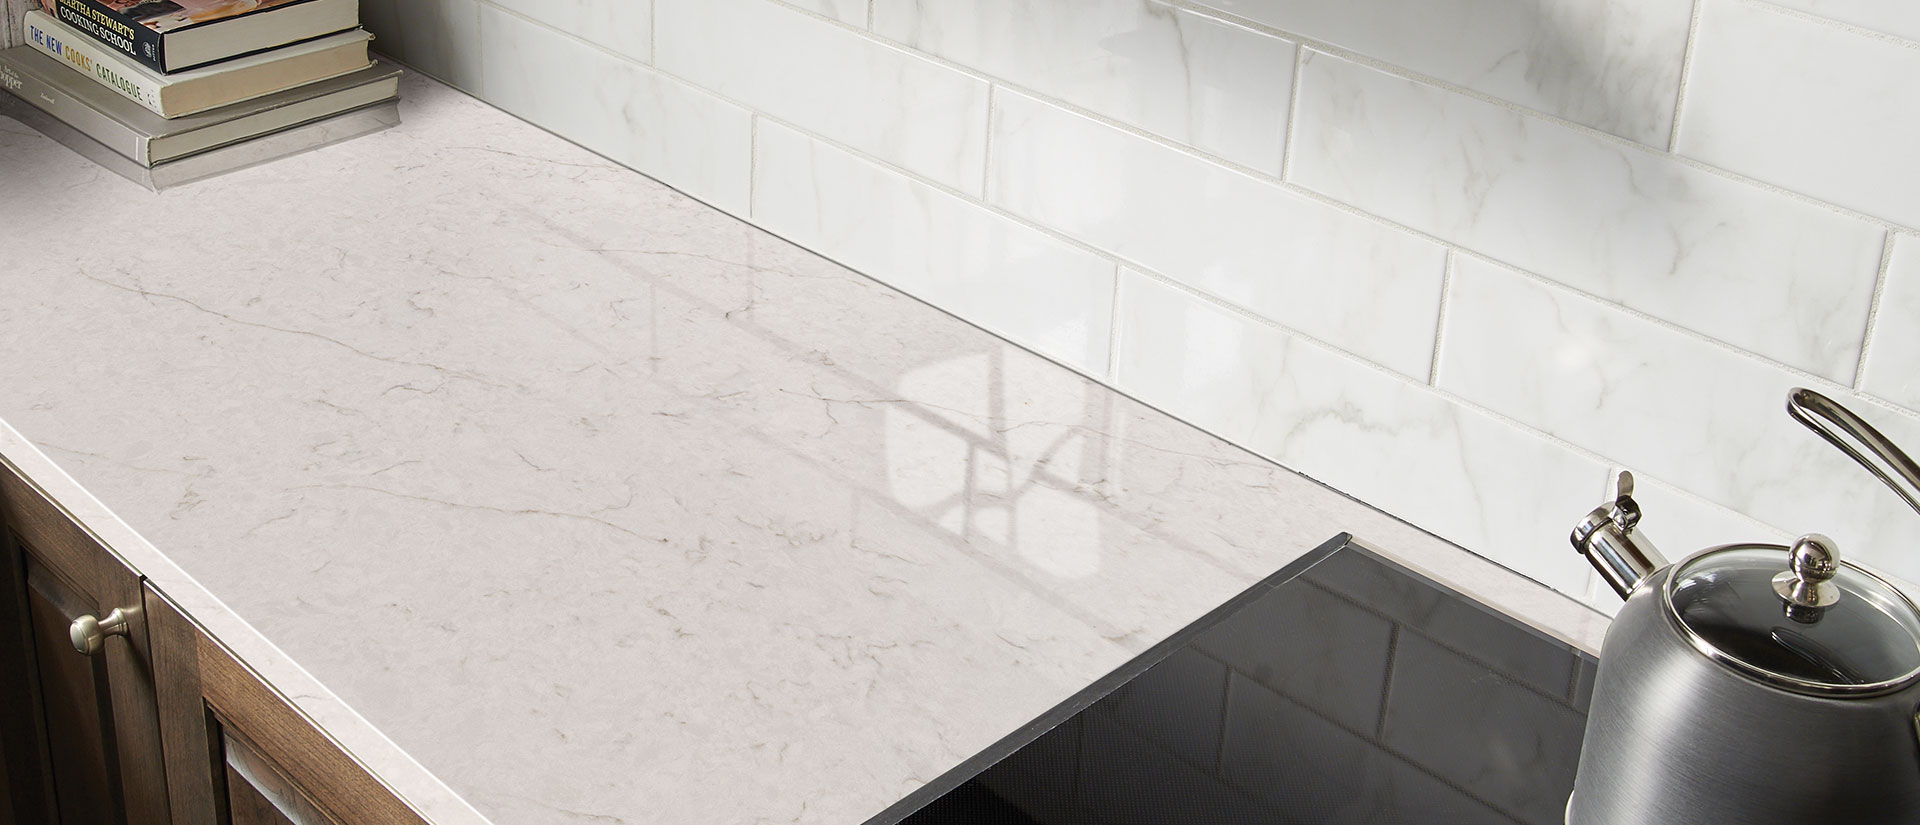 Carrara Caldia quartz countertop in a luxurious kitchen with marble backsplash